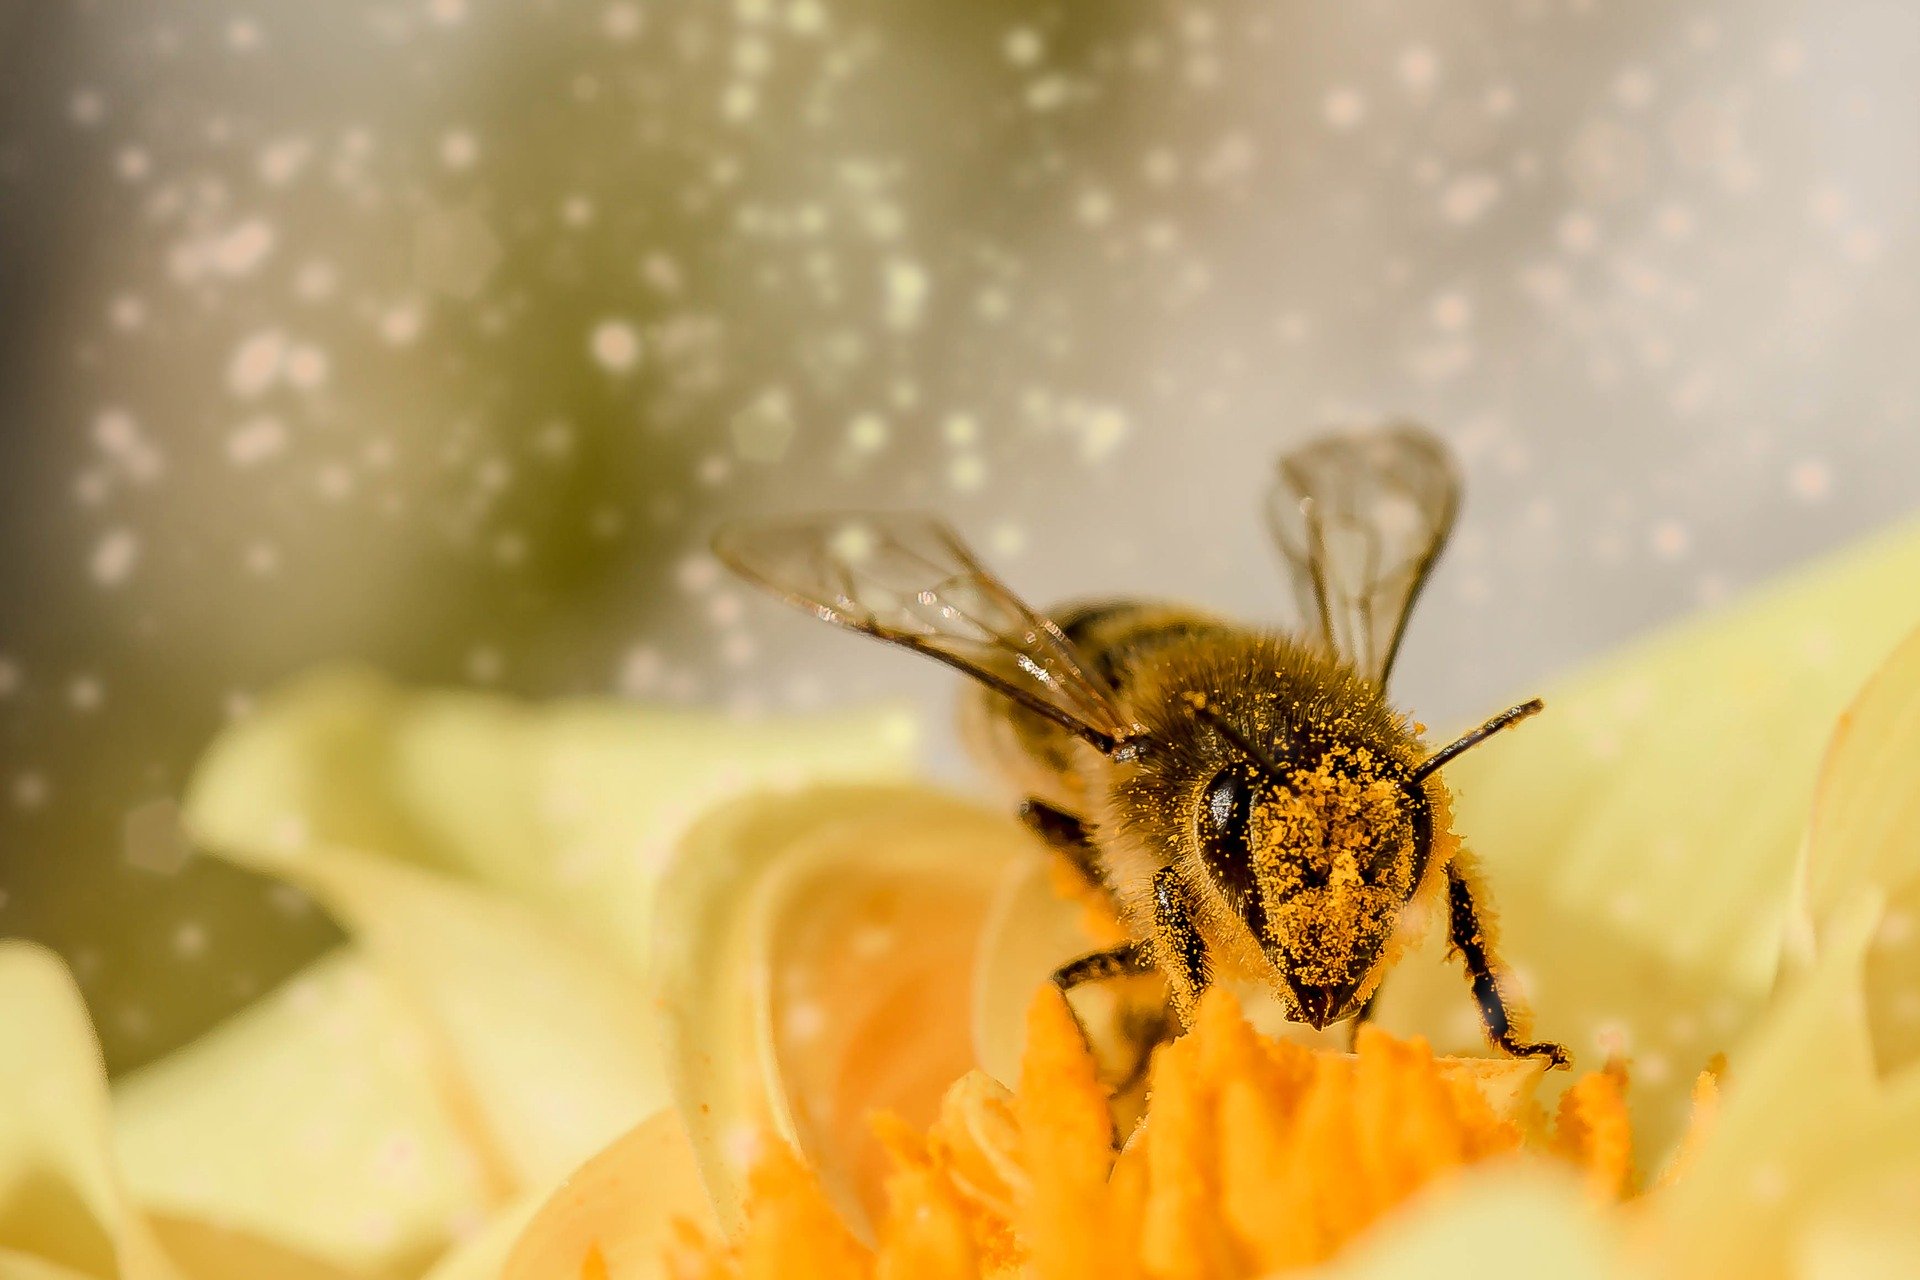 Bee in flower.